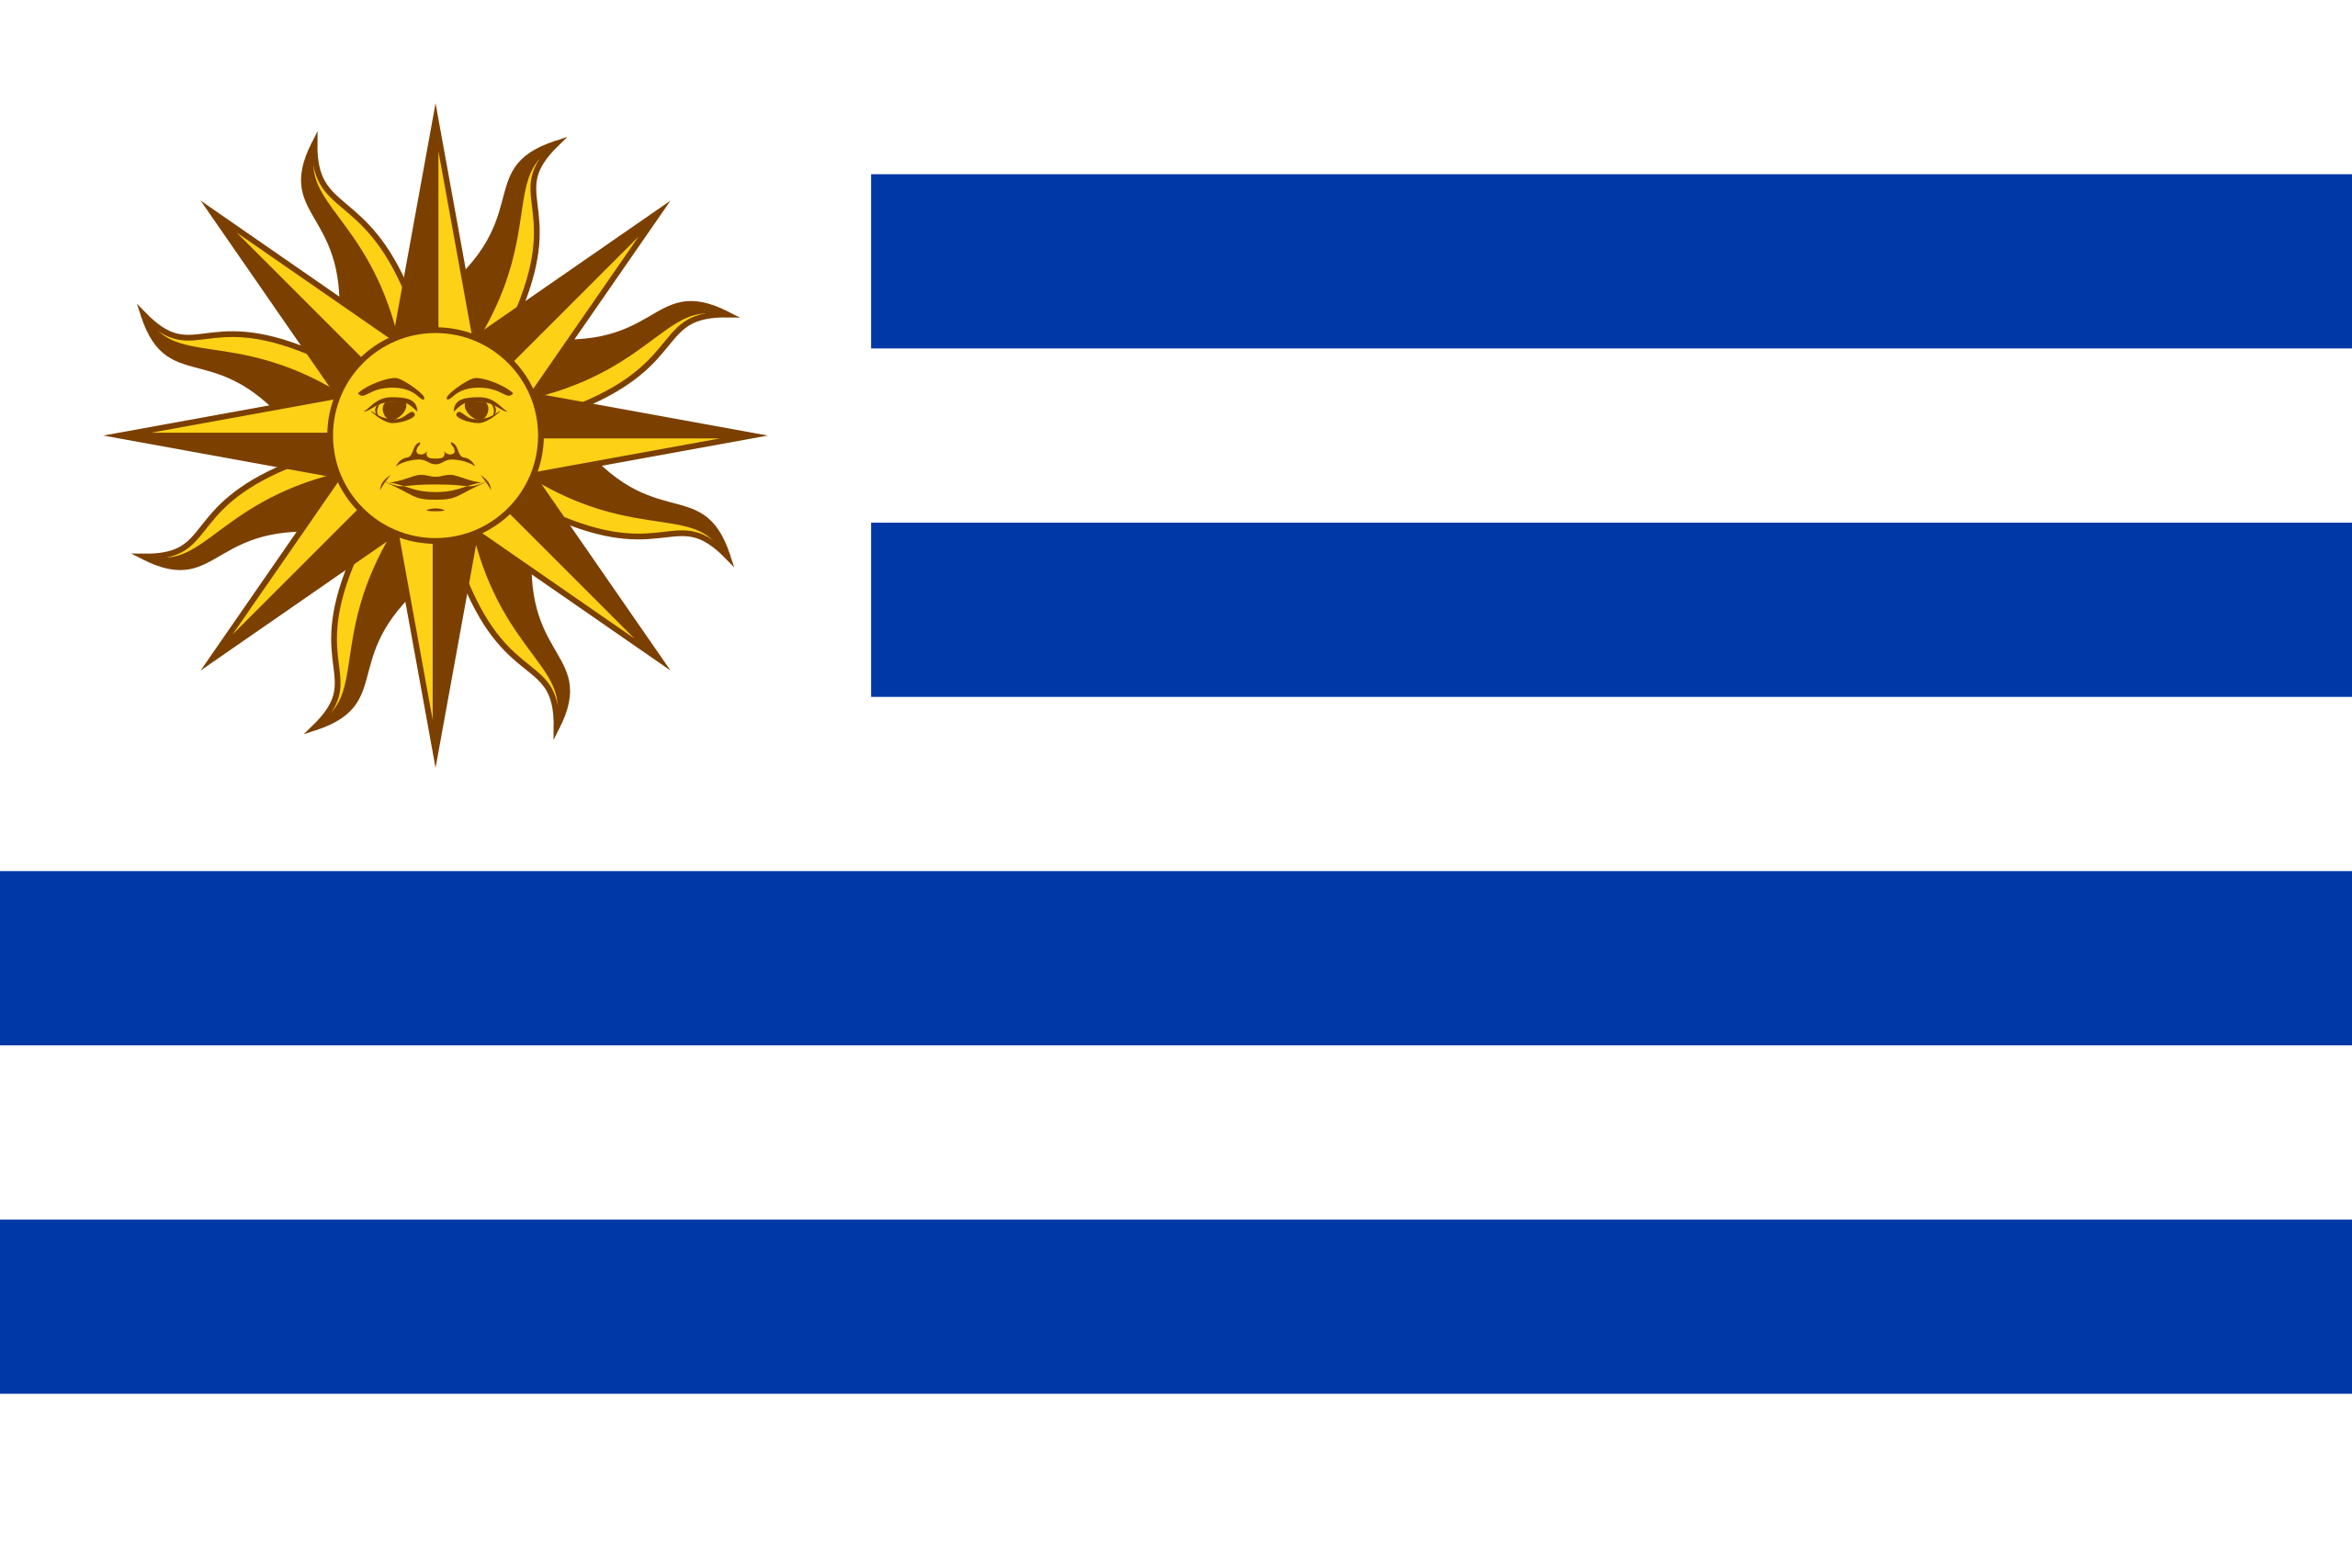 File:Uruguay flag.png